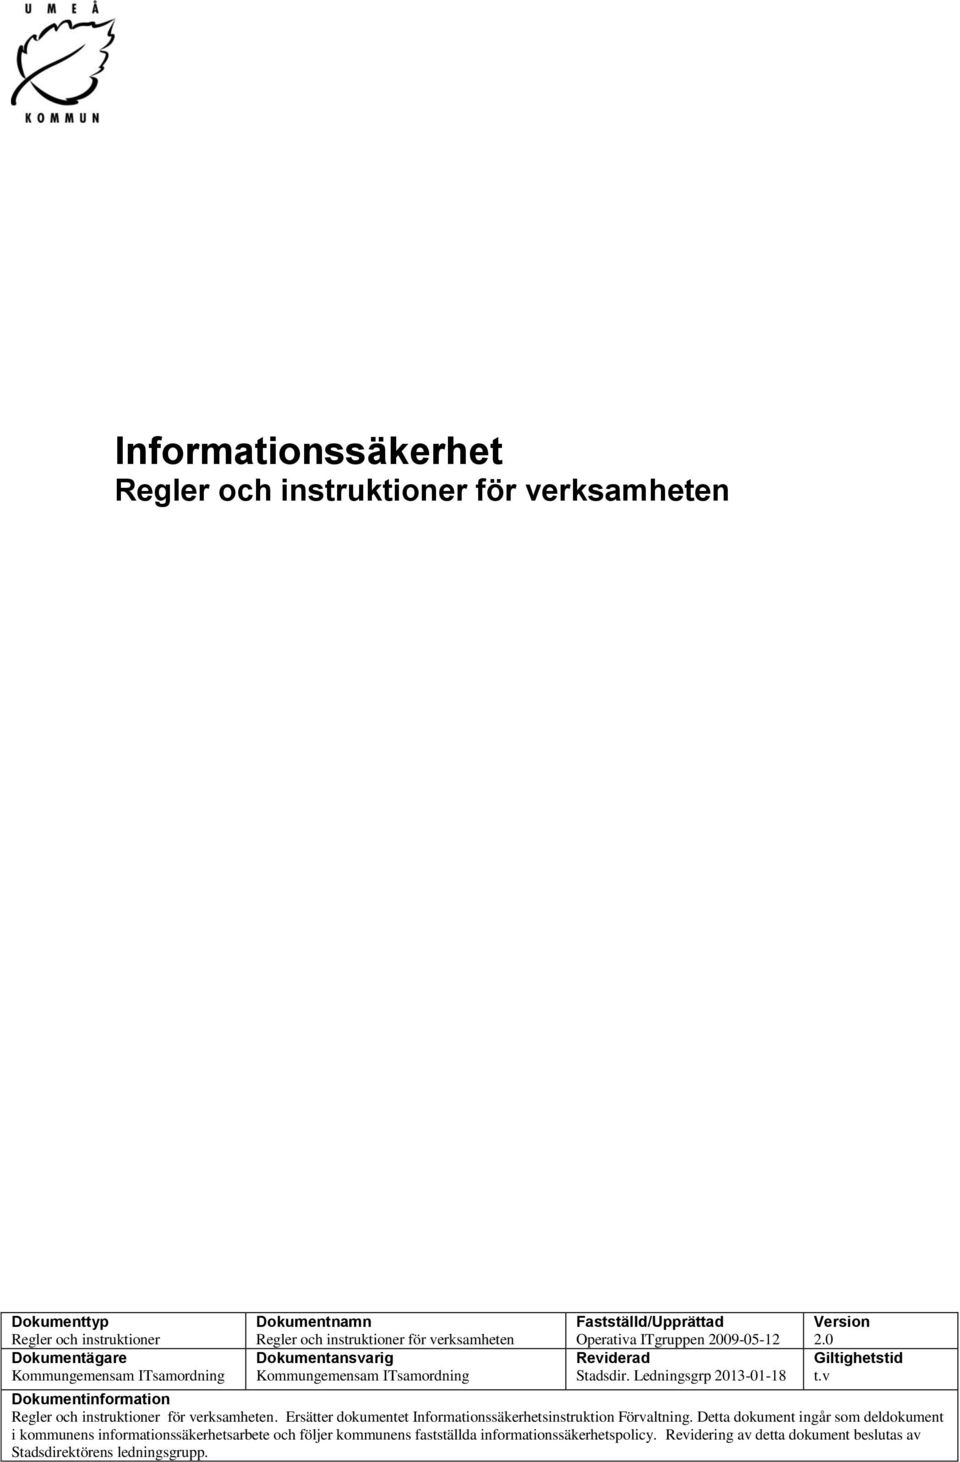 Ledningsgrp 2013-01-18 Version 2.0 Giltighetstid t.v Dokumentinformation Regler och instruktioner för verksamheten.